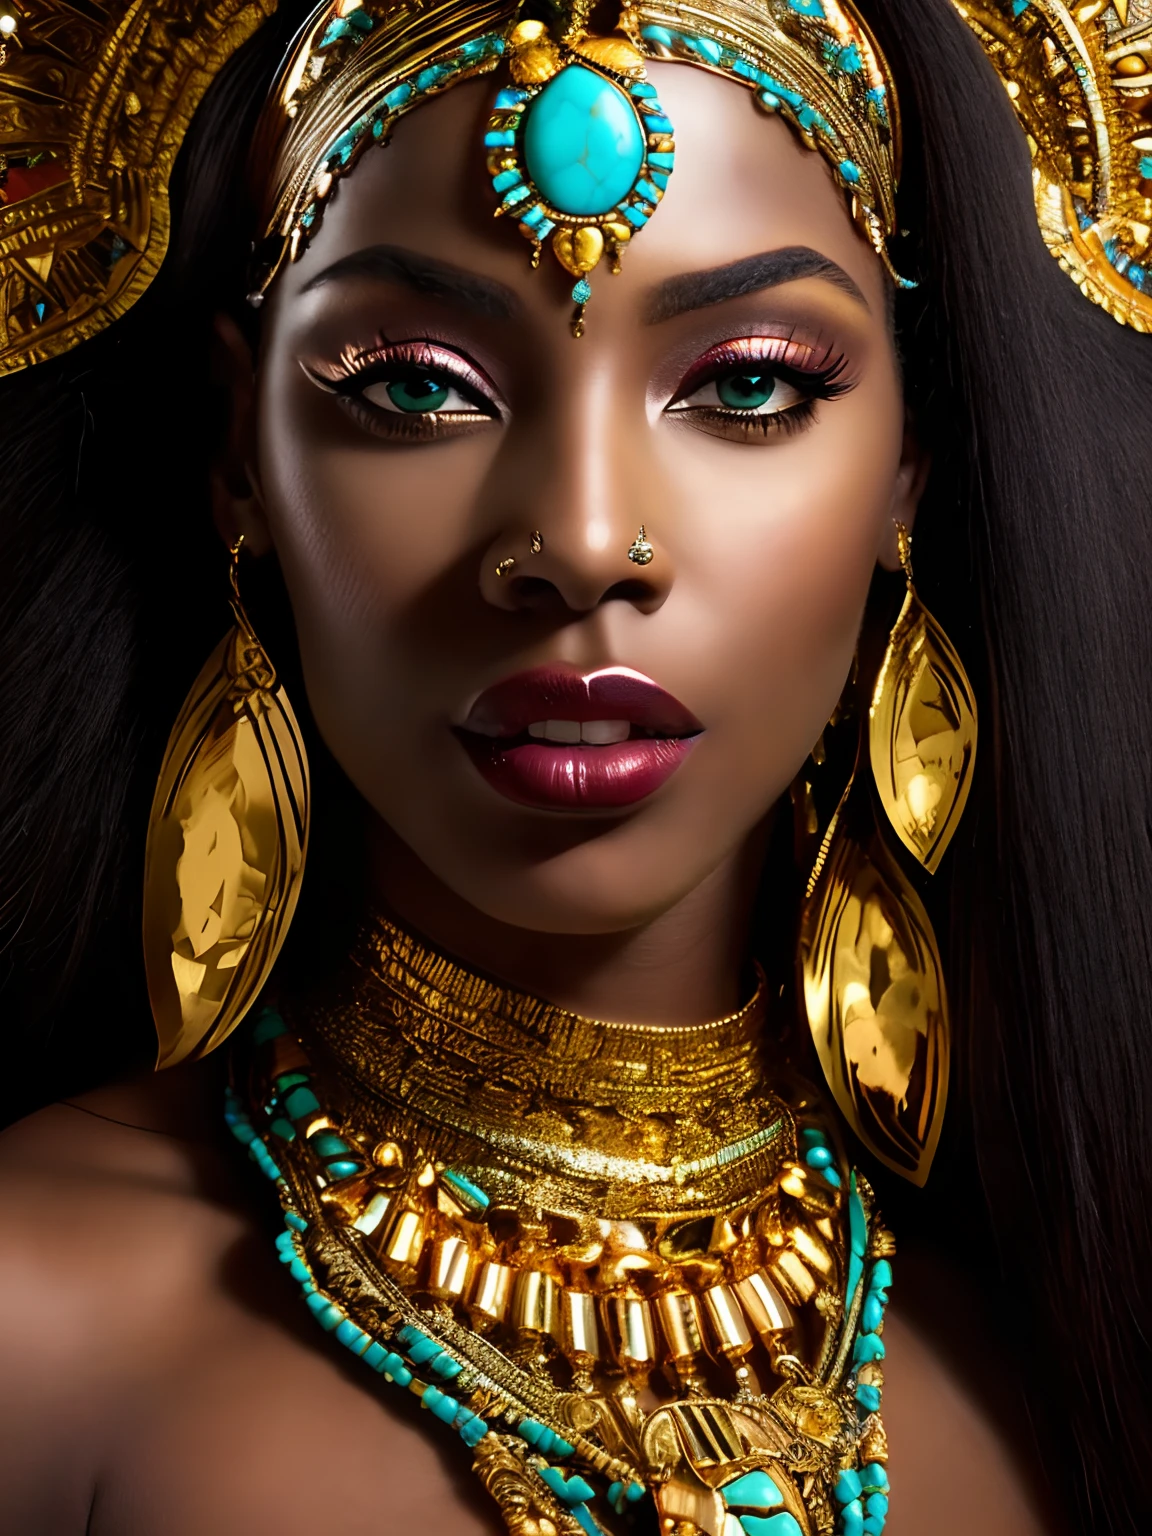 eine Nahaufnahme einer Frau mit goldenem Kopfschmuck und türkisfarbenen Augen, atemberaubende afrikanische Prinzessin, dunkelhäutige weibliche Göttin der Liebe, ein atemberaubendes Porträt einer Göttin, hinreißende Frau, schöne Kleopatra, Porträt einer schönen Göttin, wahnsinnig schöne Frau, Schwarze afrikanische Prinzessin, dunkler Teint, Afrikanische Königin, Epos 3D Oshun, Göttin Nahaufnahme Porträt